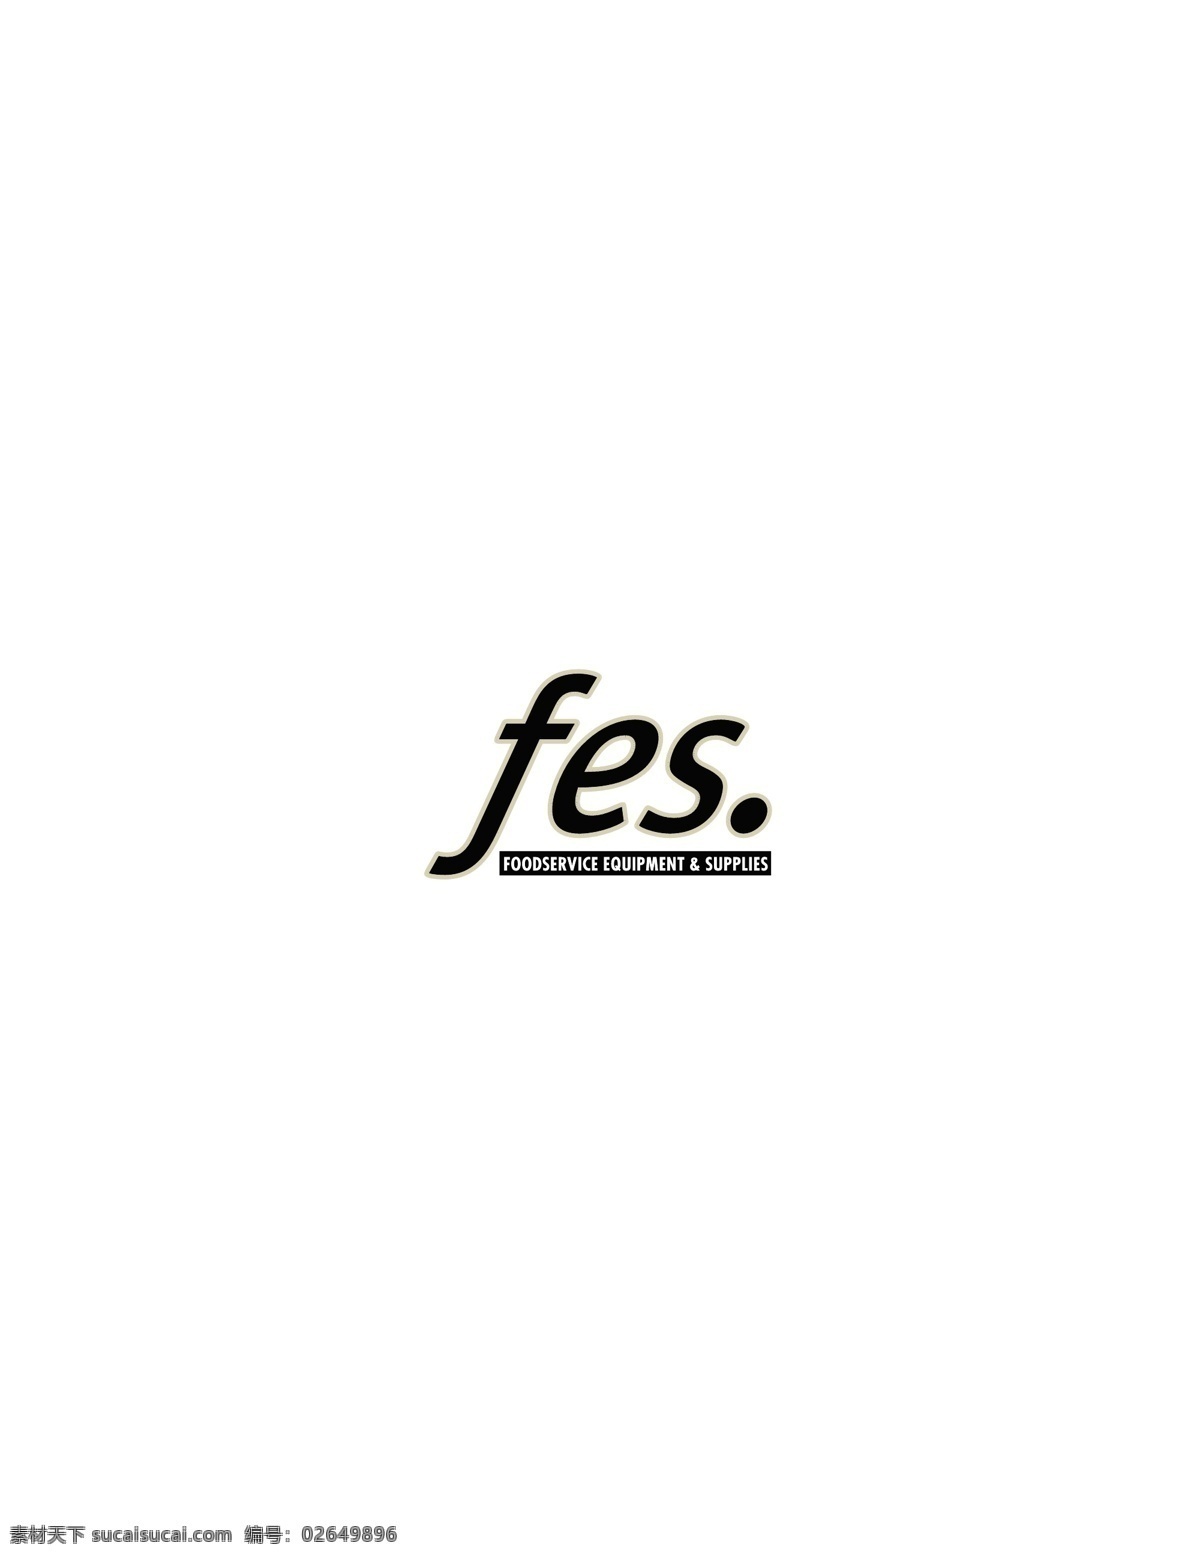 fes logo大全 logo 设计欣赏 商业矢量 矢量下载 名牌 饮料 标志 标志设计 欣赏 网页矢量 矢量图 其他矢量图